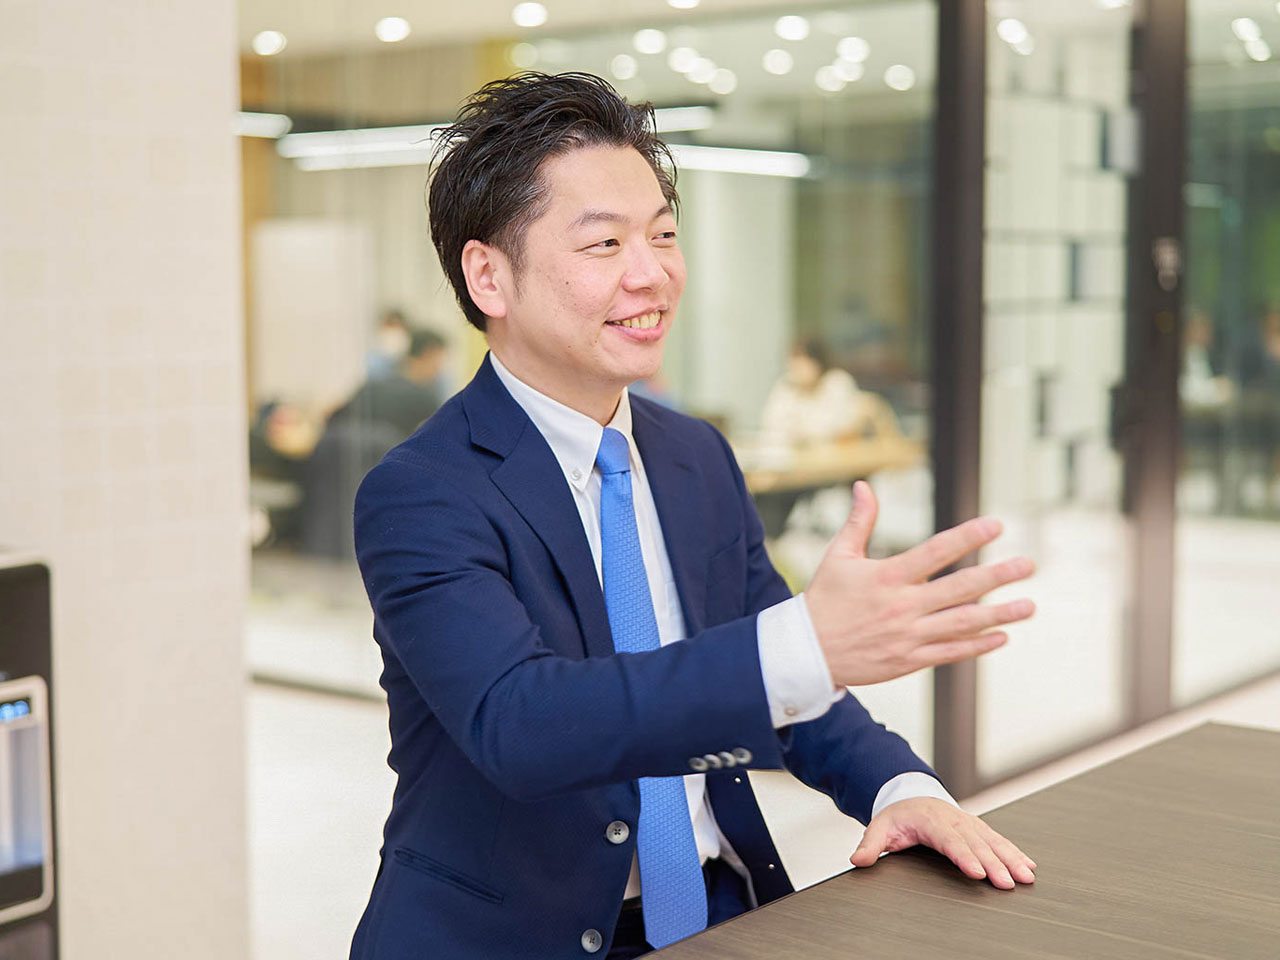 同社は、「日本の発展に貢献する」というビジョンを掲げ、クライアントと共に汗をかきながら課題を解決していく「ハンズオン型」のコンサルティングファームだ。